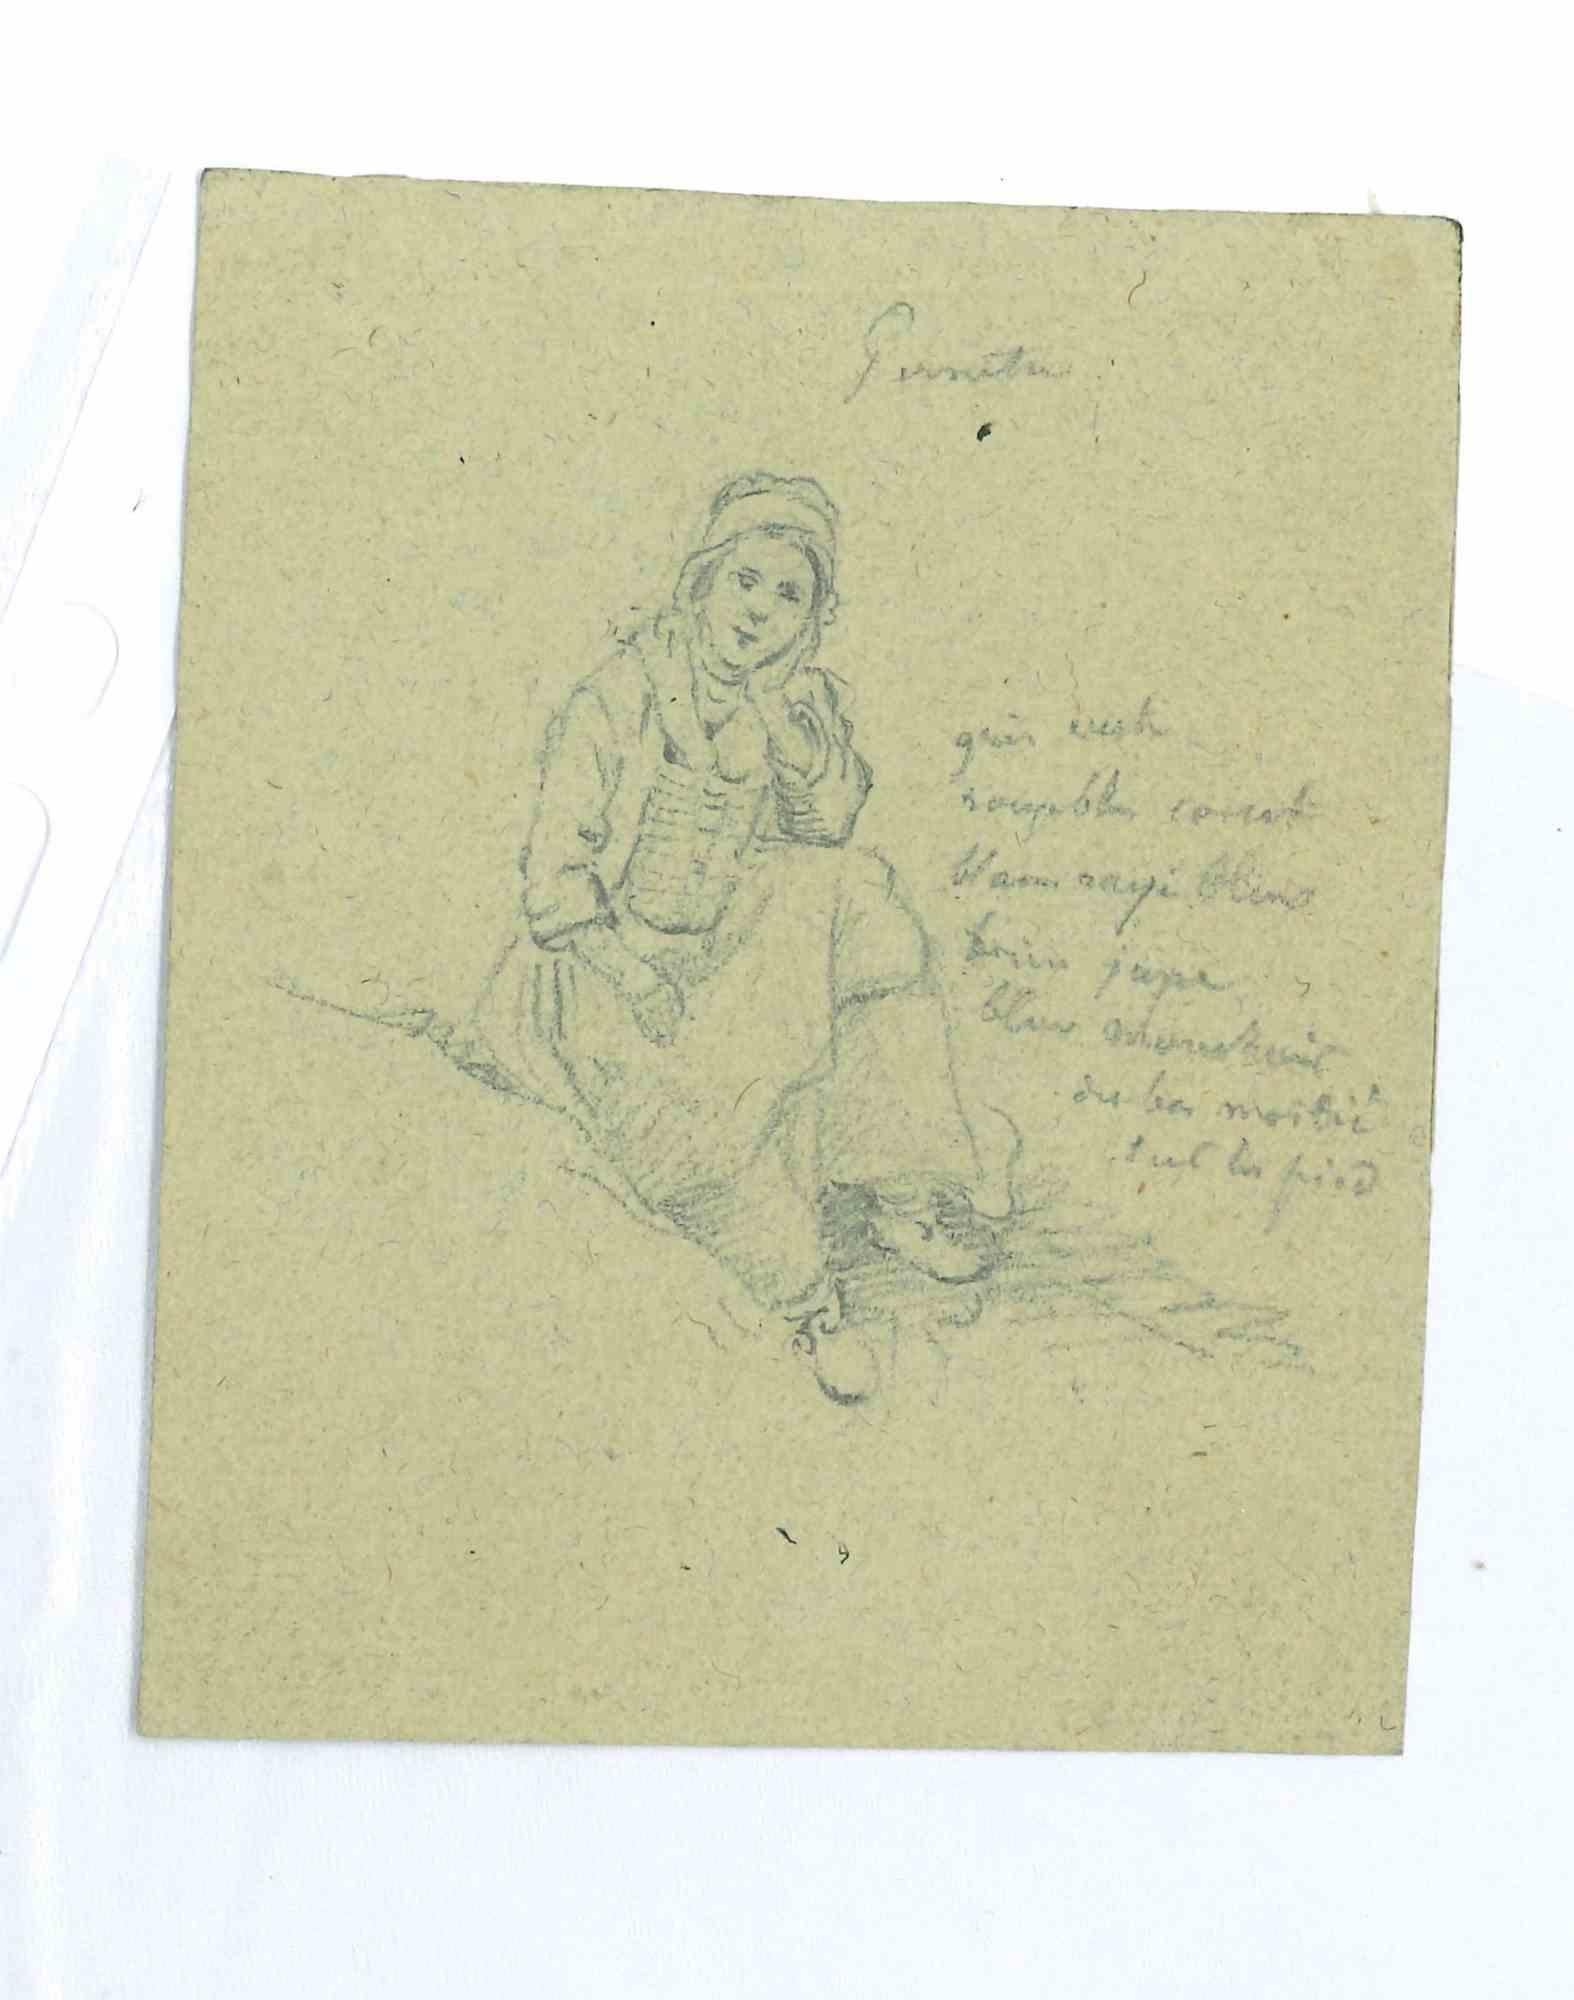 Das Mädchen ist eine Originalzeichnung in Bleistift, die im 19. Jahrhundert von Paul Huet (1803-1869) angefertigt wurde.

Mit einer weiteren Zeichnung auf der Rückseite.

In gutem Zustand. 

Das Kunstwerk wird mit zarten und geschickten Strichen